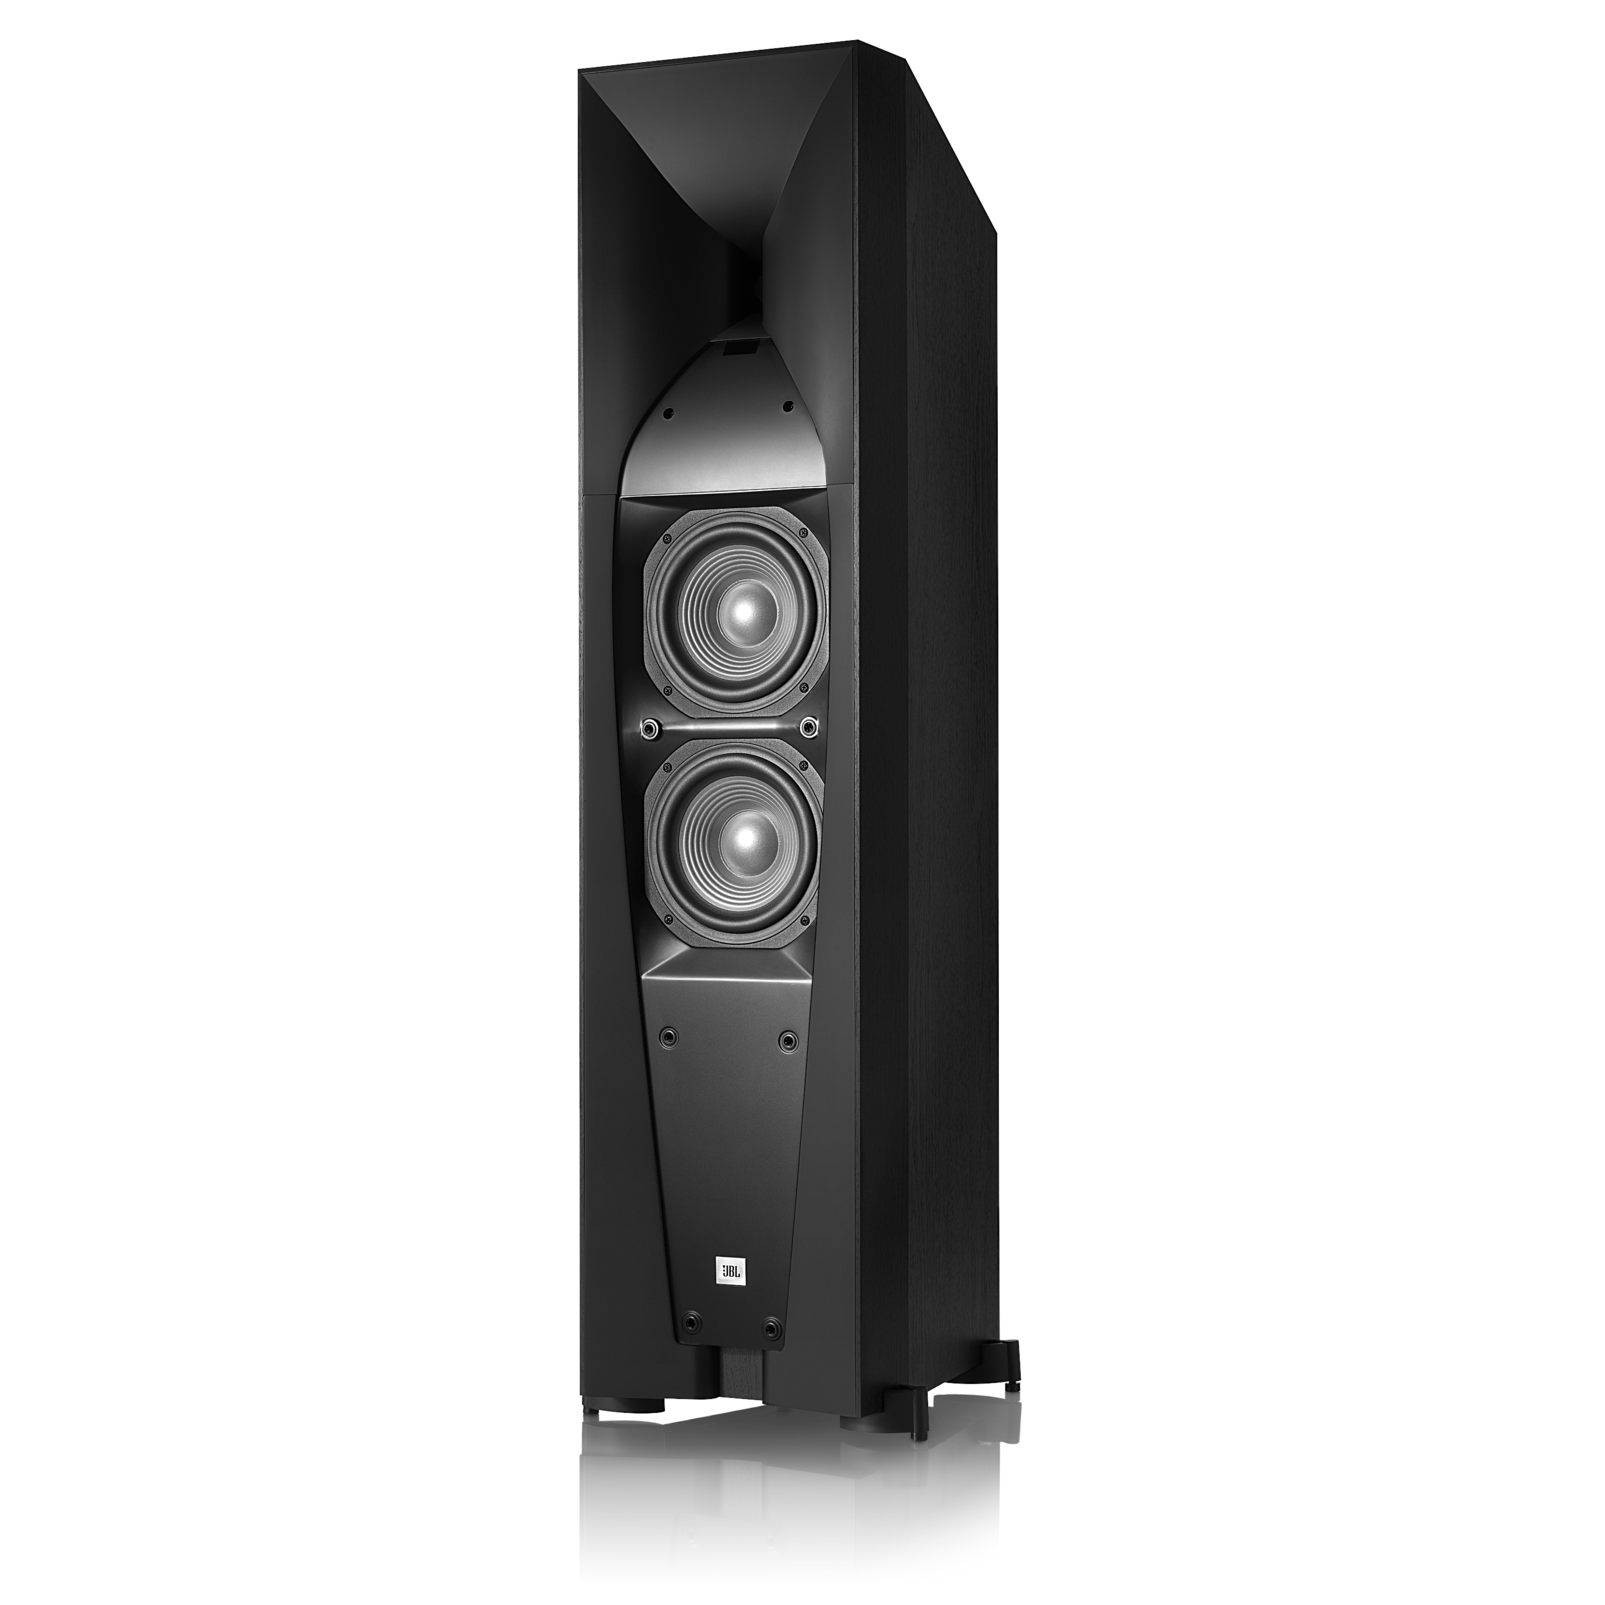 Each JBL Studio 580 Dual 6.5-Inch Floorstanding Loudspeaker Renewed